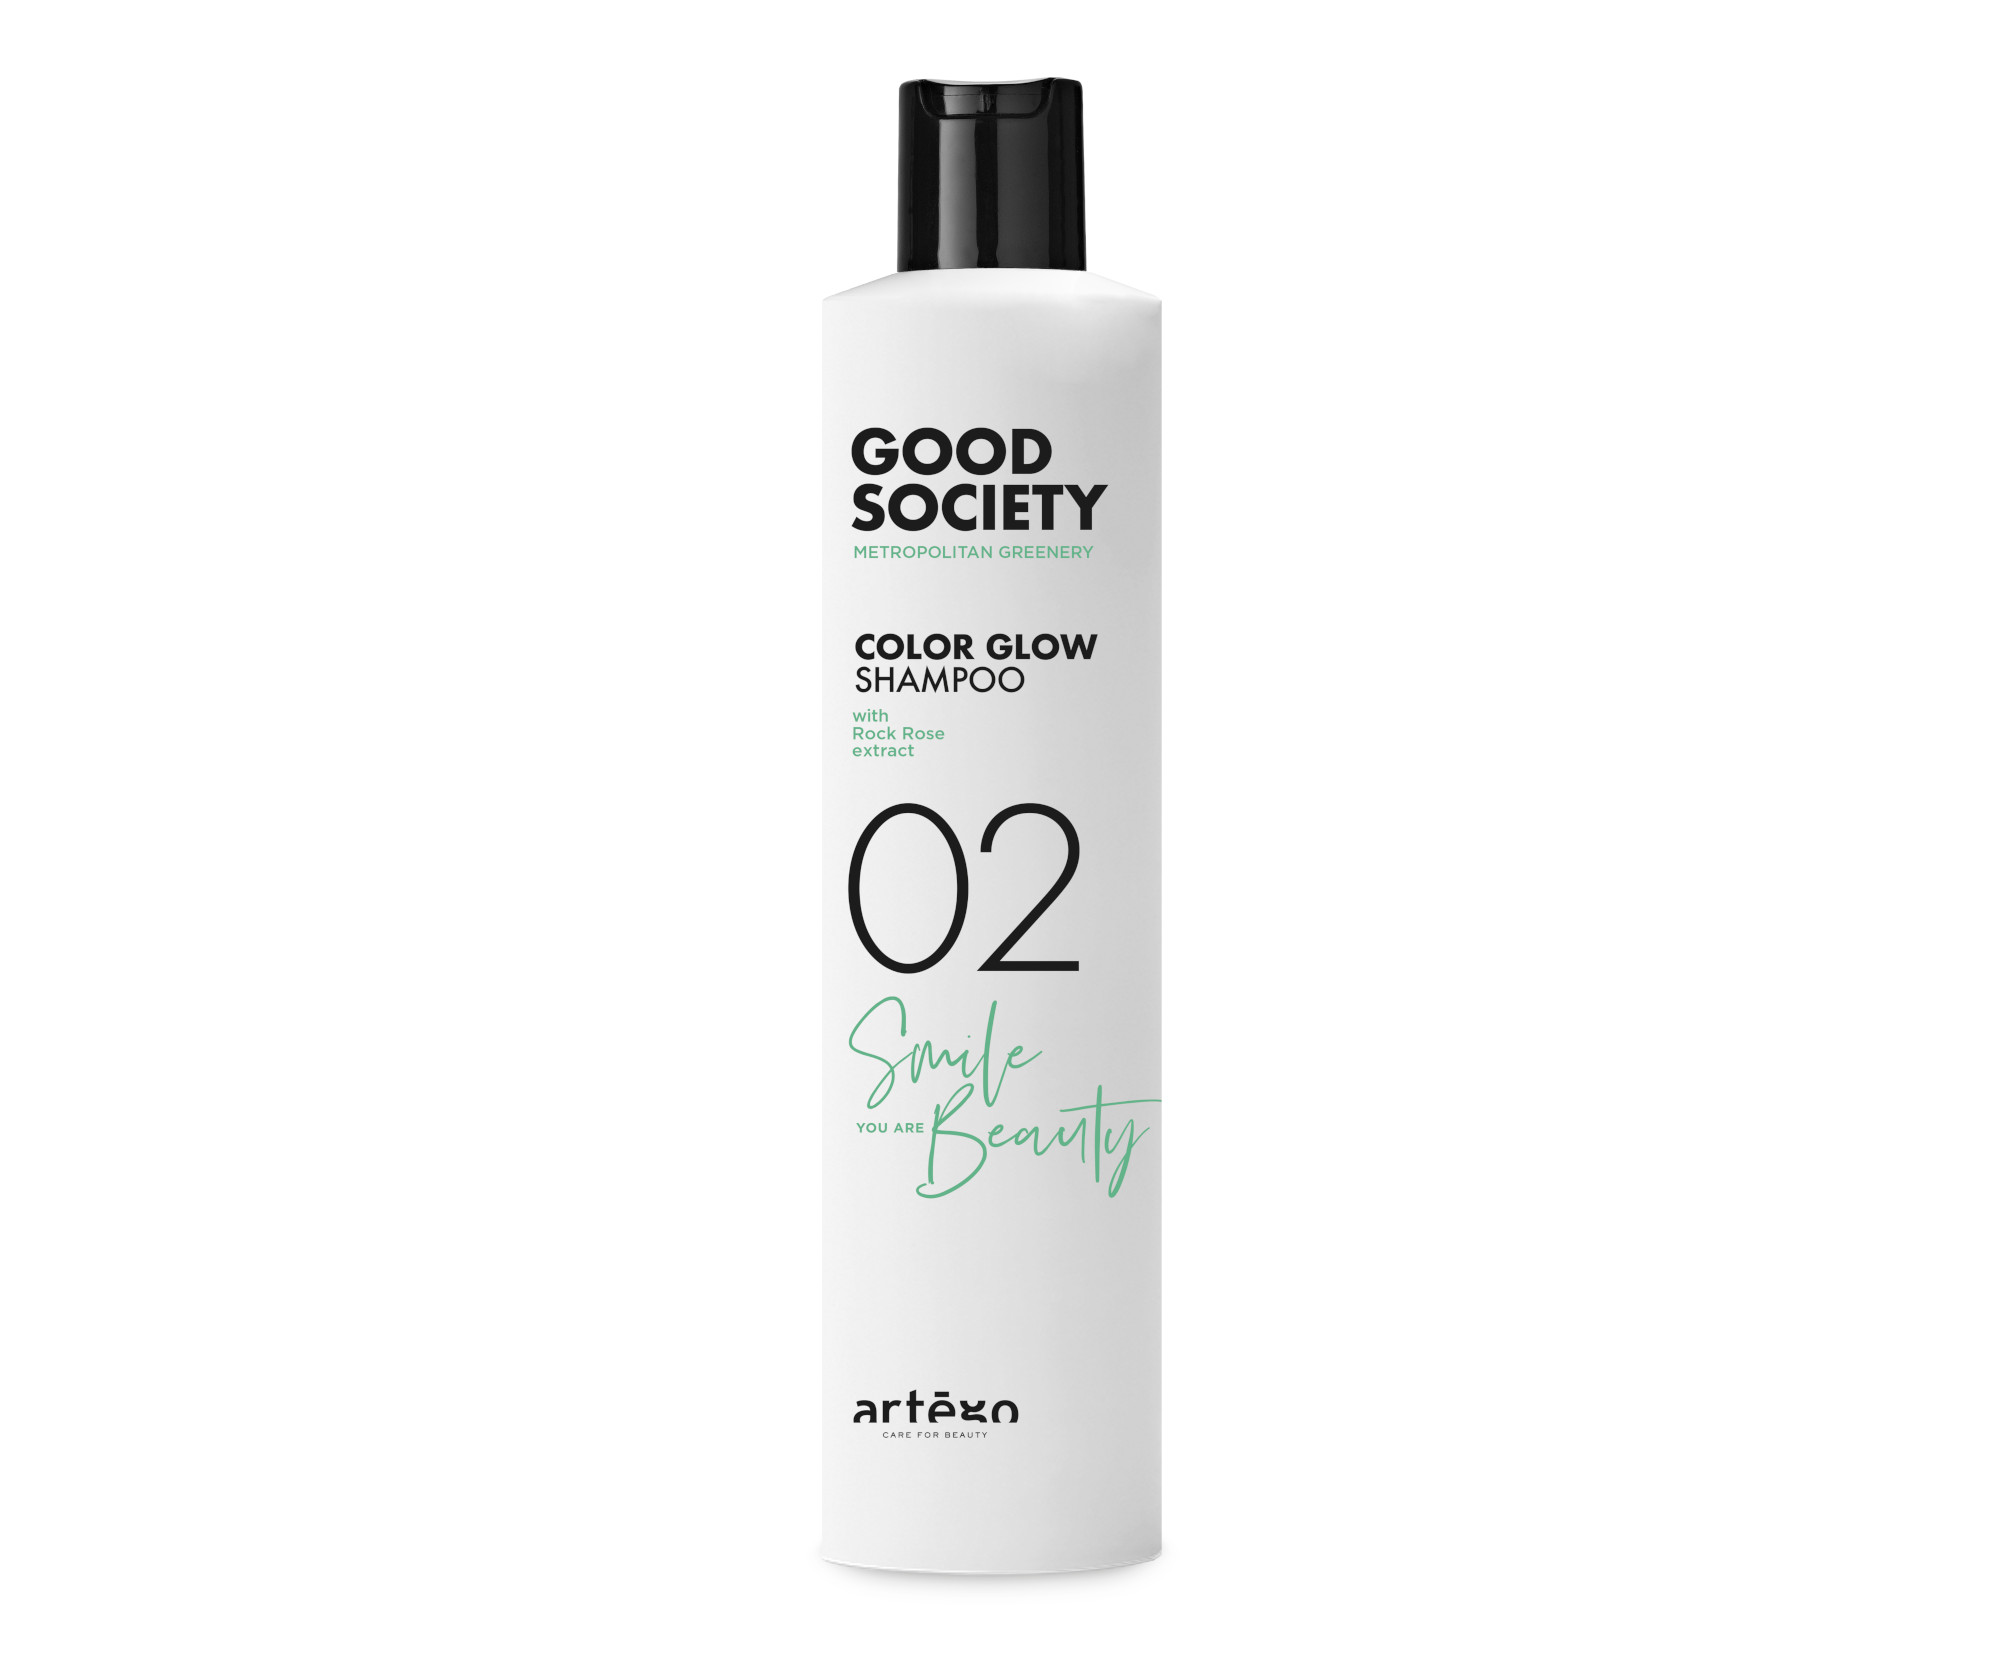 Šampon pro výživu barvených vlasů Artégo Good Society 02 Color Glow - 250 ml (0165900) + dárek zdarma